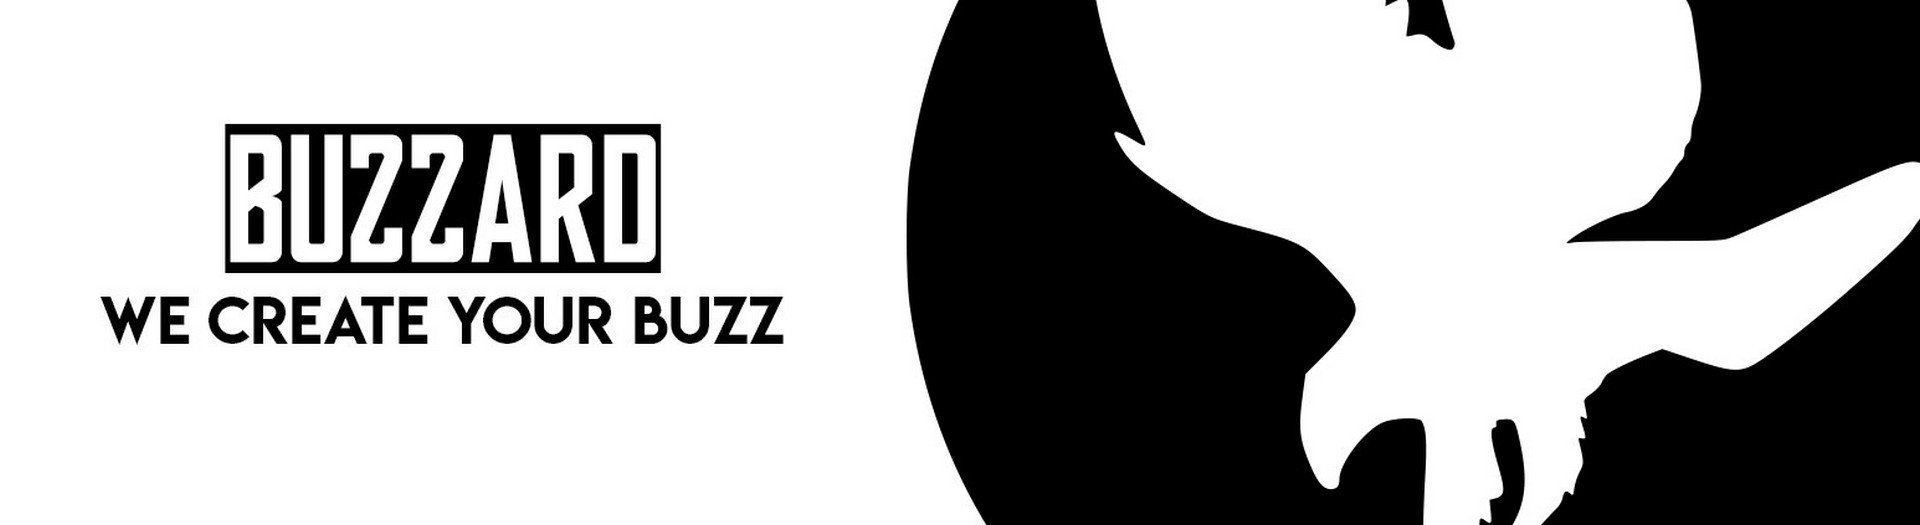 Dirk Nyberg met debuutsingle ‘We zijn weg’! - Logo Buzzard 1